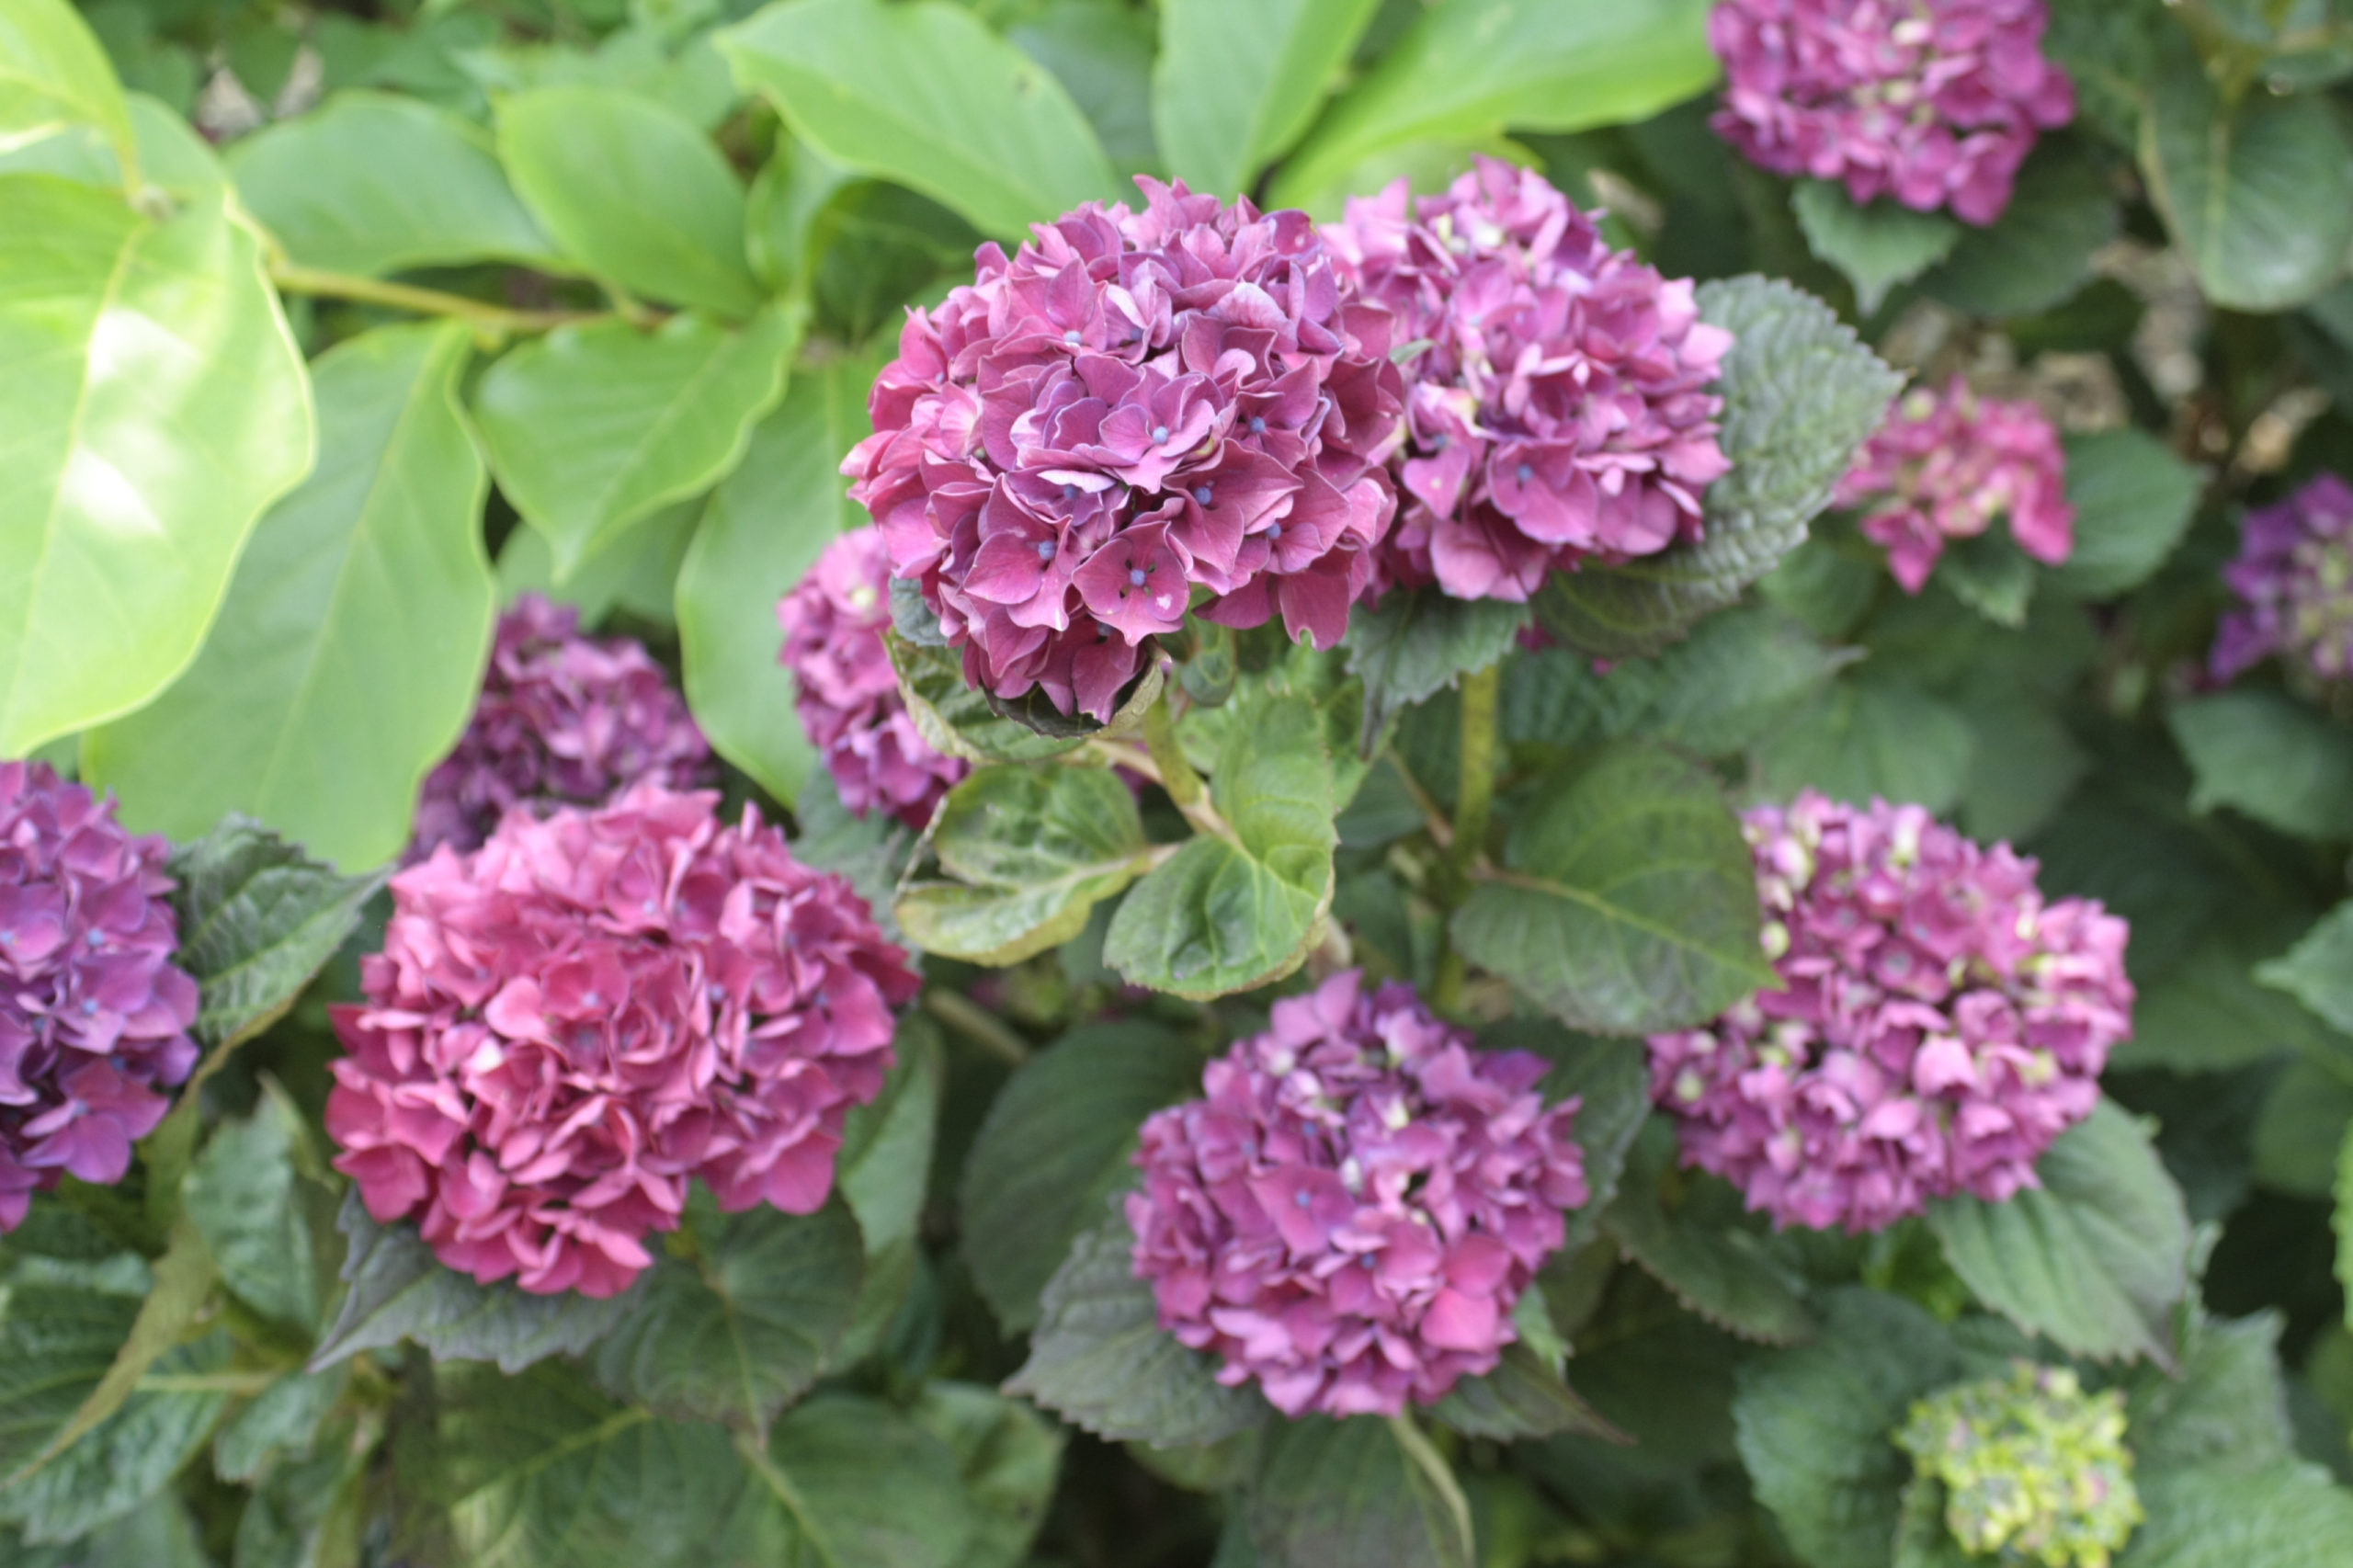 Léto v botanické zahradě začíná – lákají barvy letničkových záhonů, vůně růží i tajemné svatojánské byliny